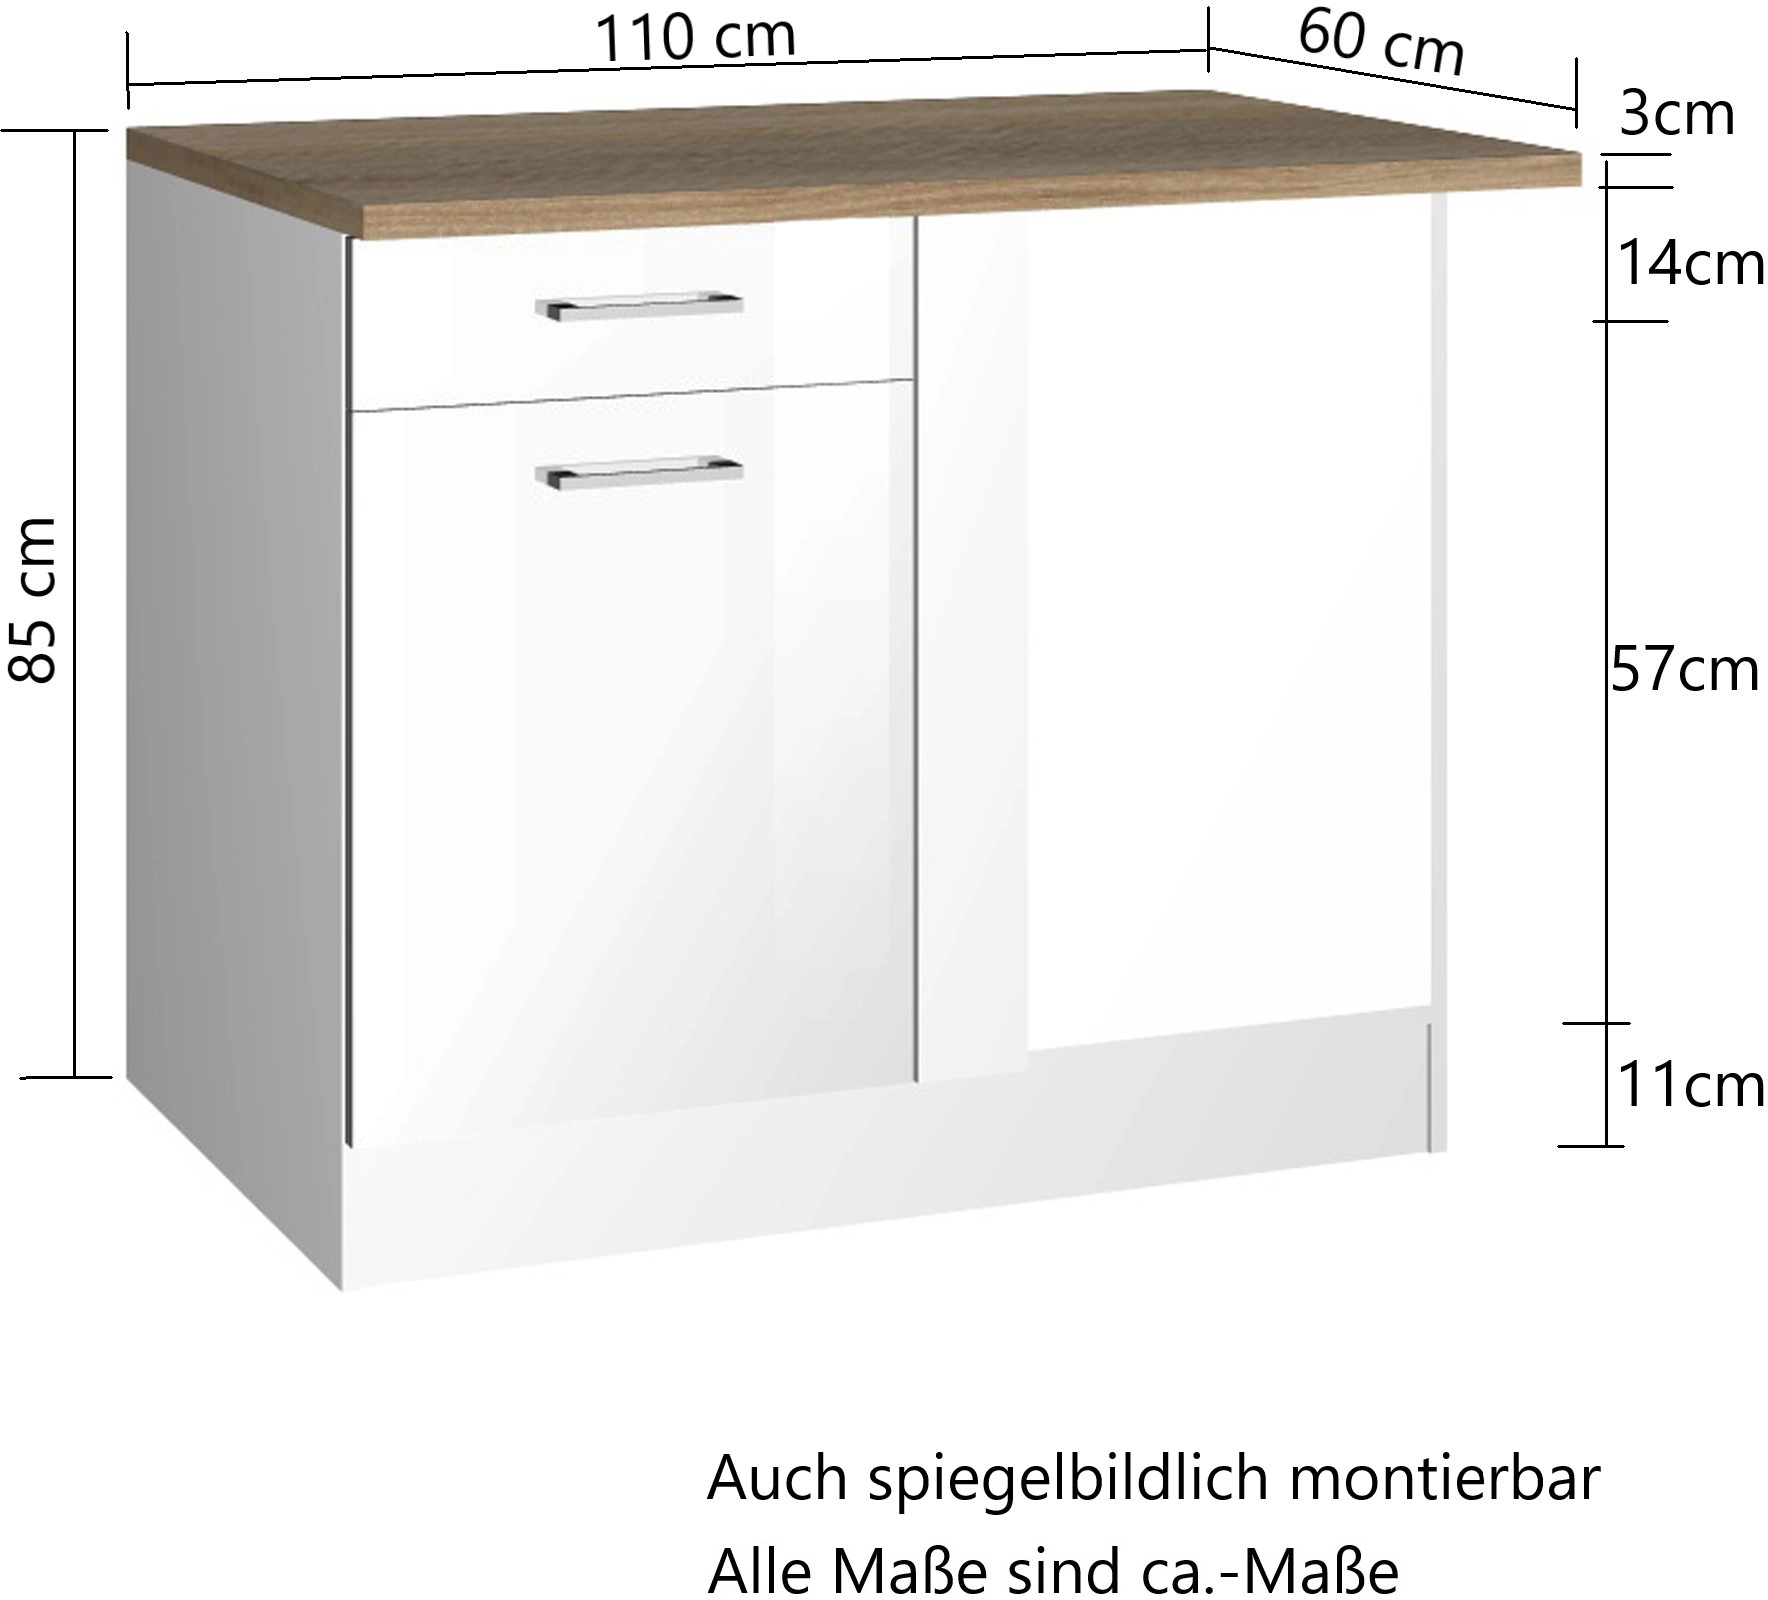 Held Möbel Küchen-Eckschrank OBI 110 Hochglanz cm bei Mailand Graphit/Graphit kaufen